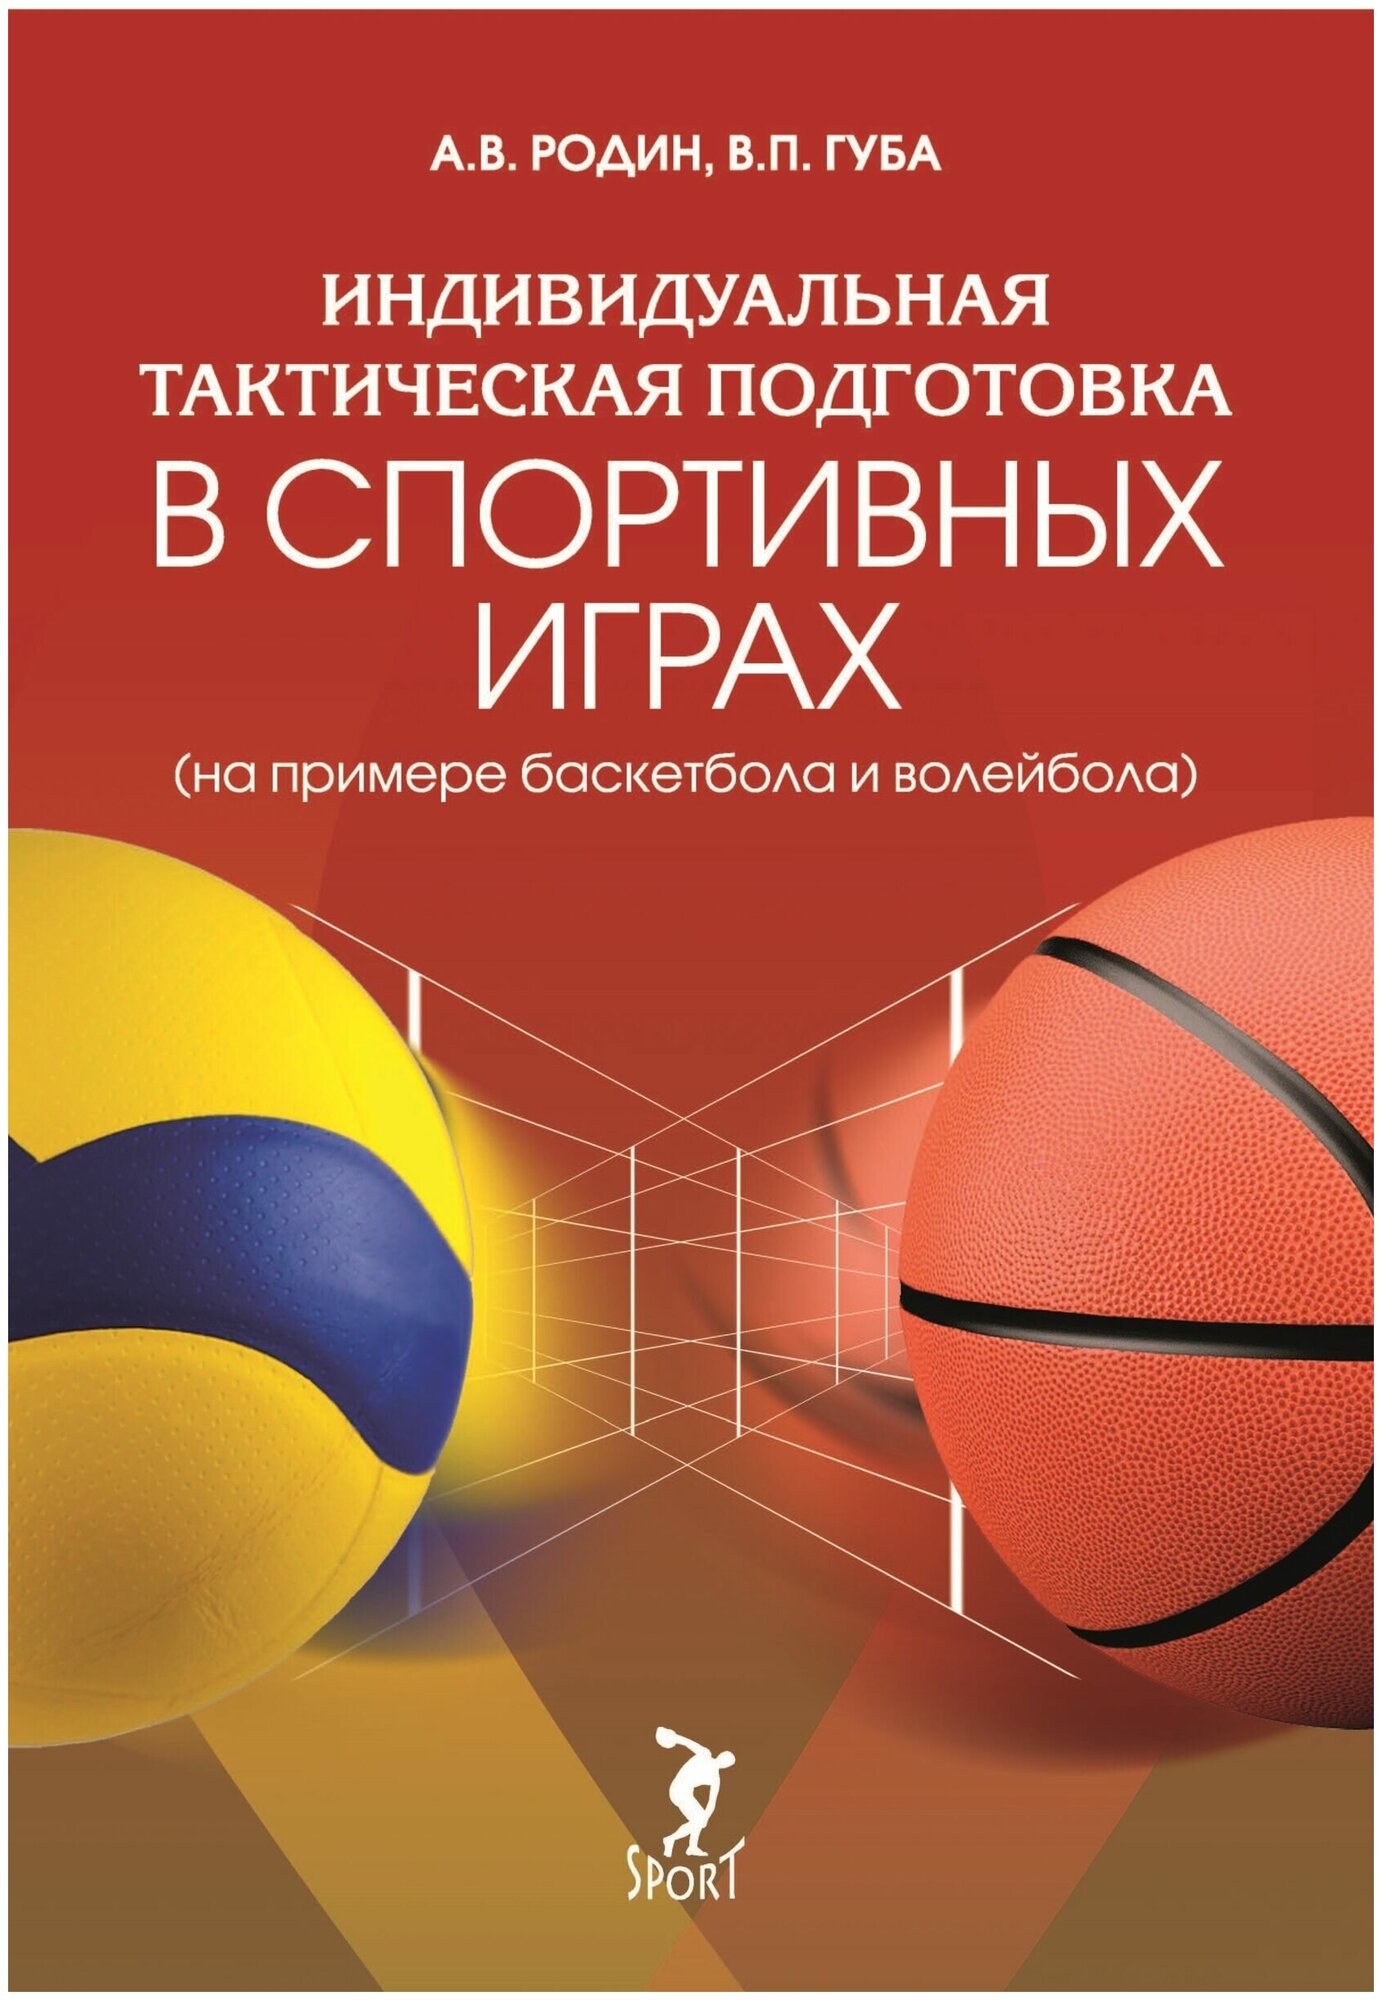 Индивидуальная тактическая подготовка в спортивных играх на примере баскетбола и волейбола - фото №1